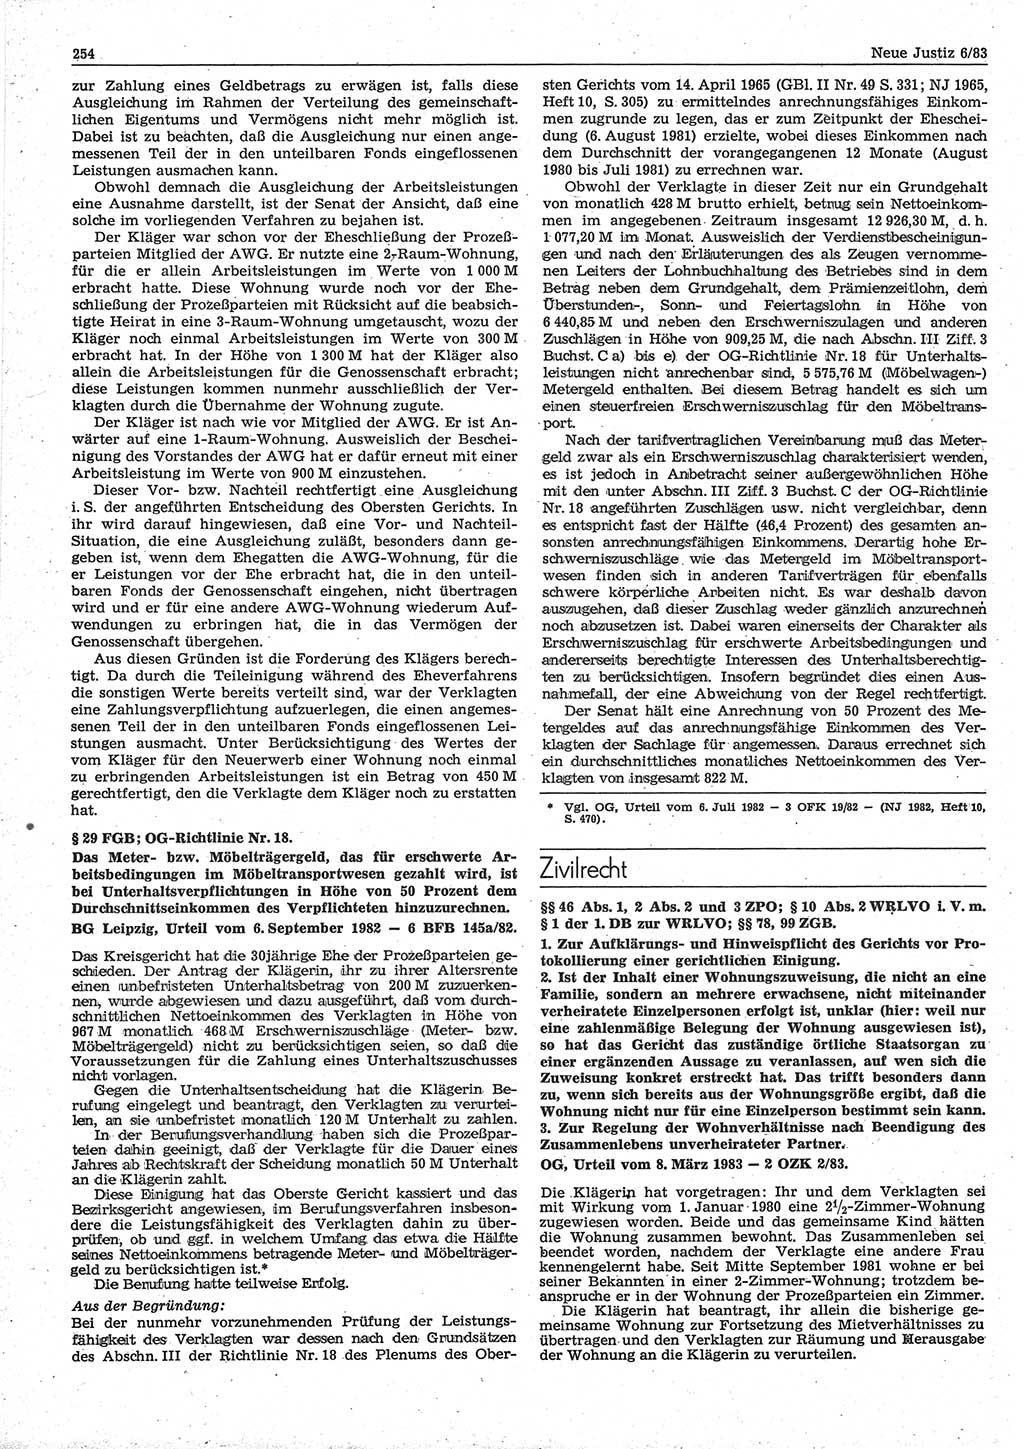 Neue Justiz (NJ), Zeitschrift für sozialistisches Recht und Gesetzlichkeit [Deutsche Demokratische Republik (DDR)], 37. Jahrgang 1983, Seite 254 (NJ DDR 1983, S. 254)